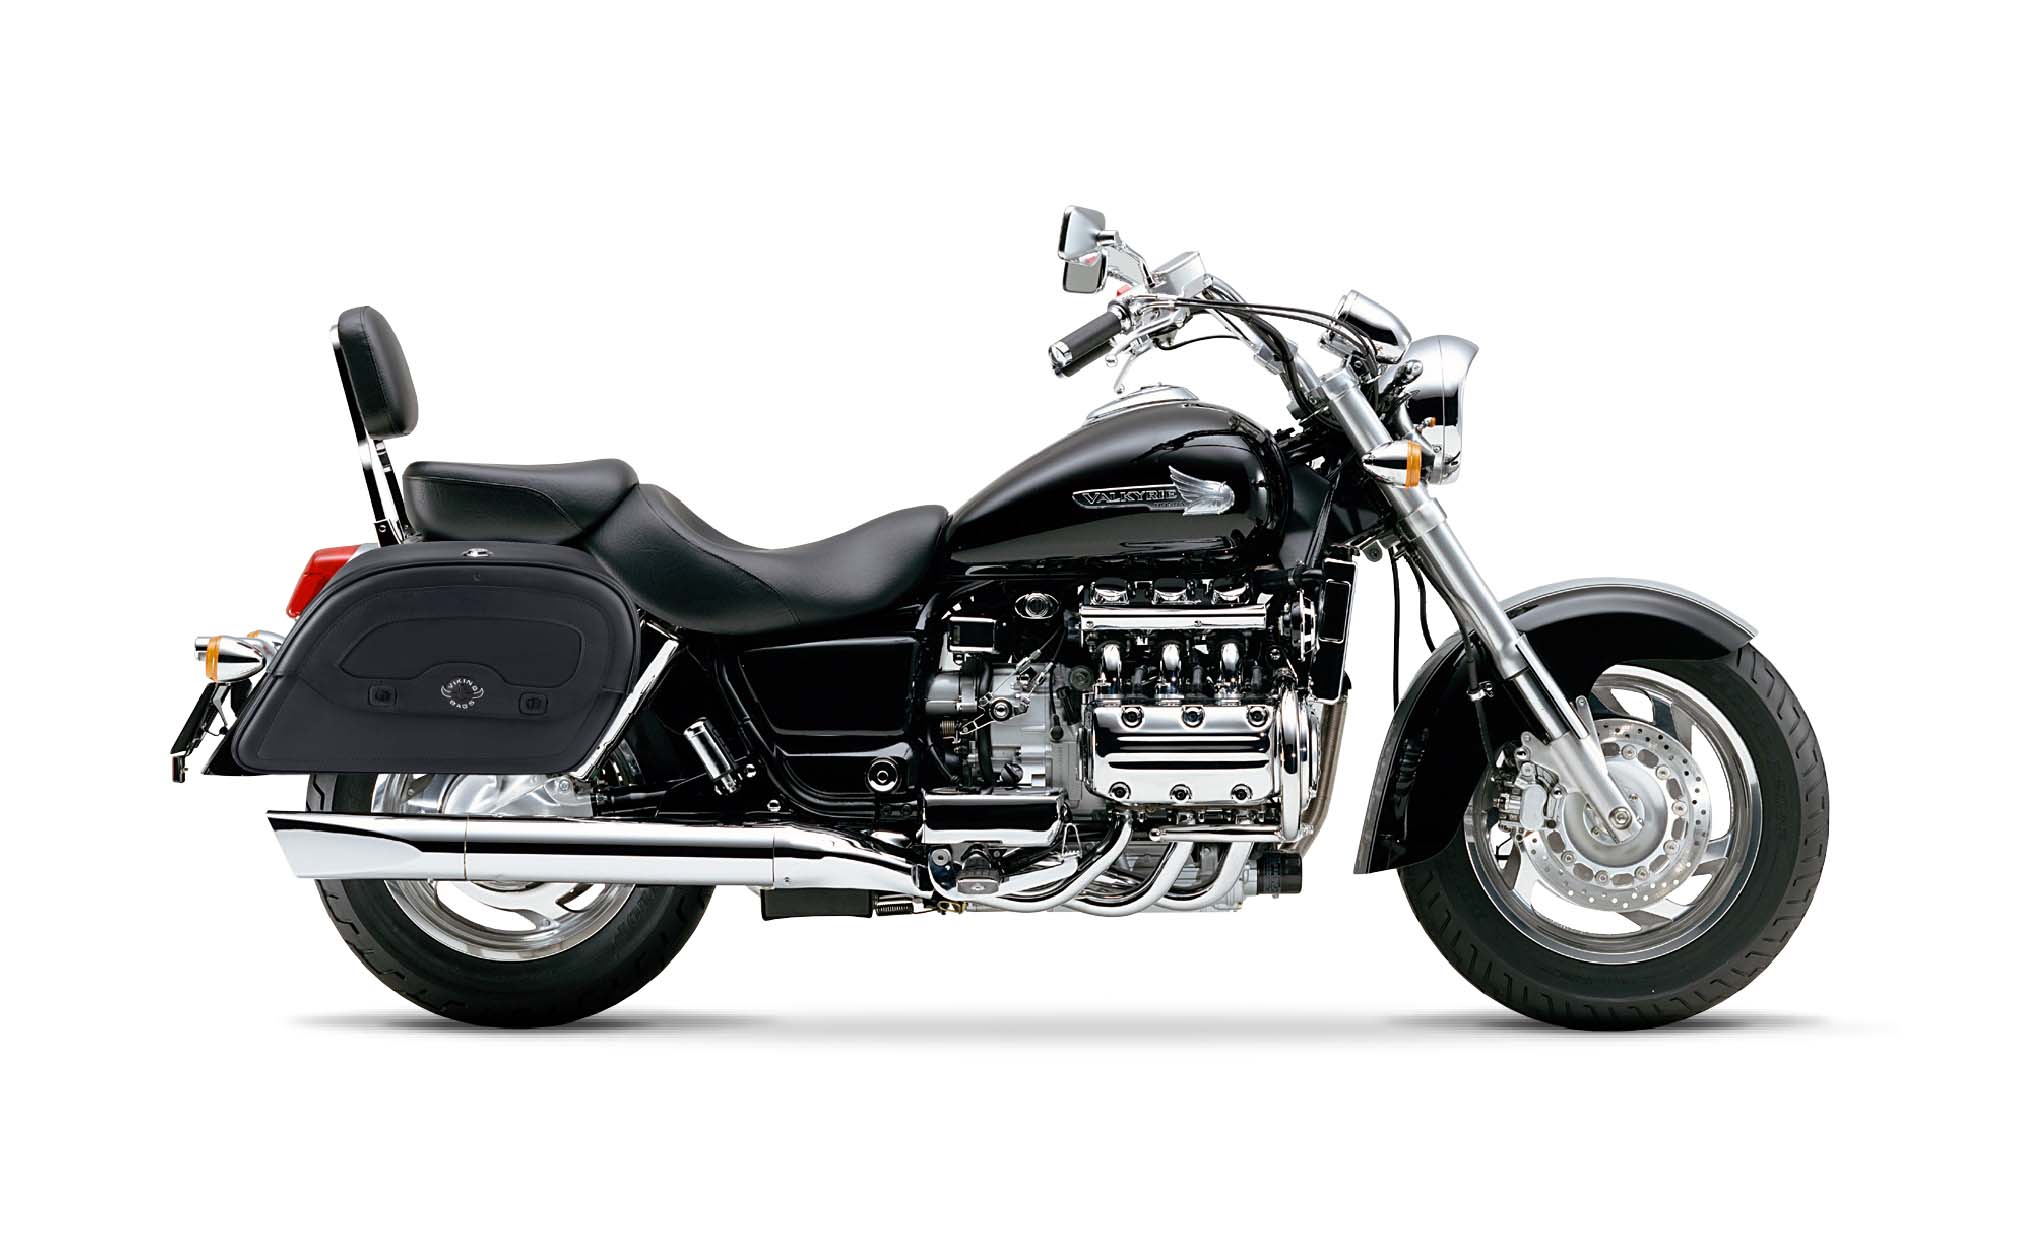 Viking Warrior Large Honda 1500 Valkyrie Standard Leather Motorcycle Saddlebags on Bike Photo @expand